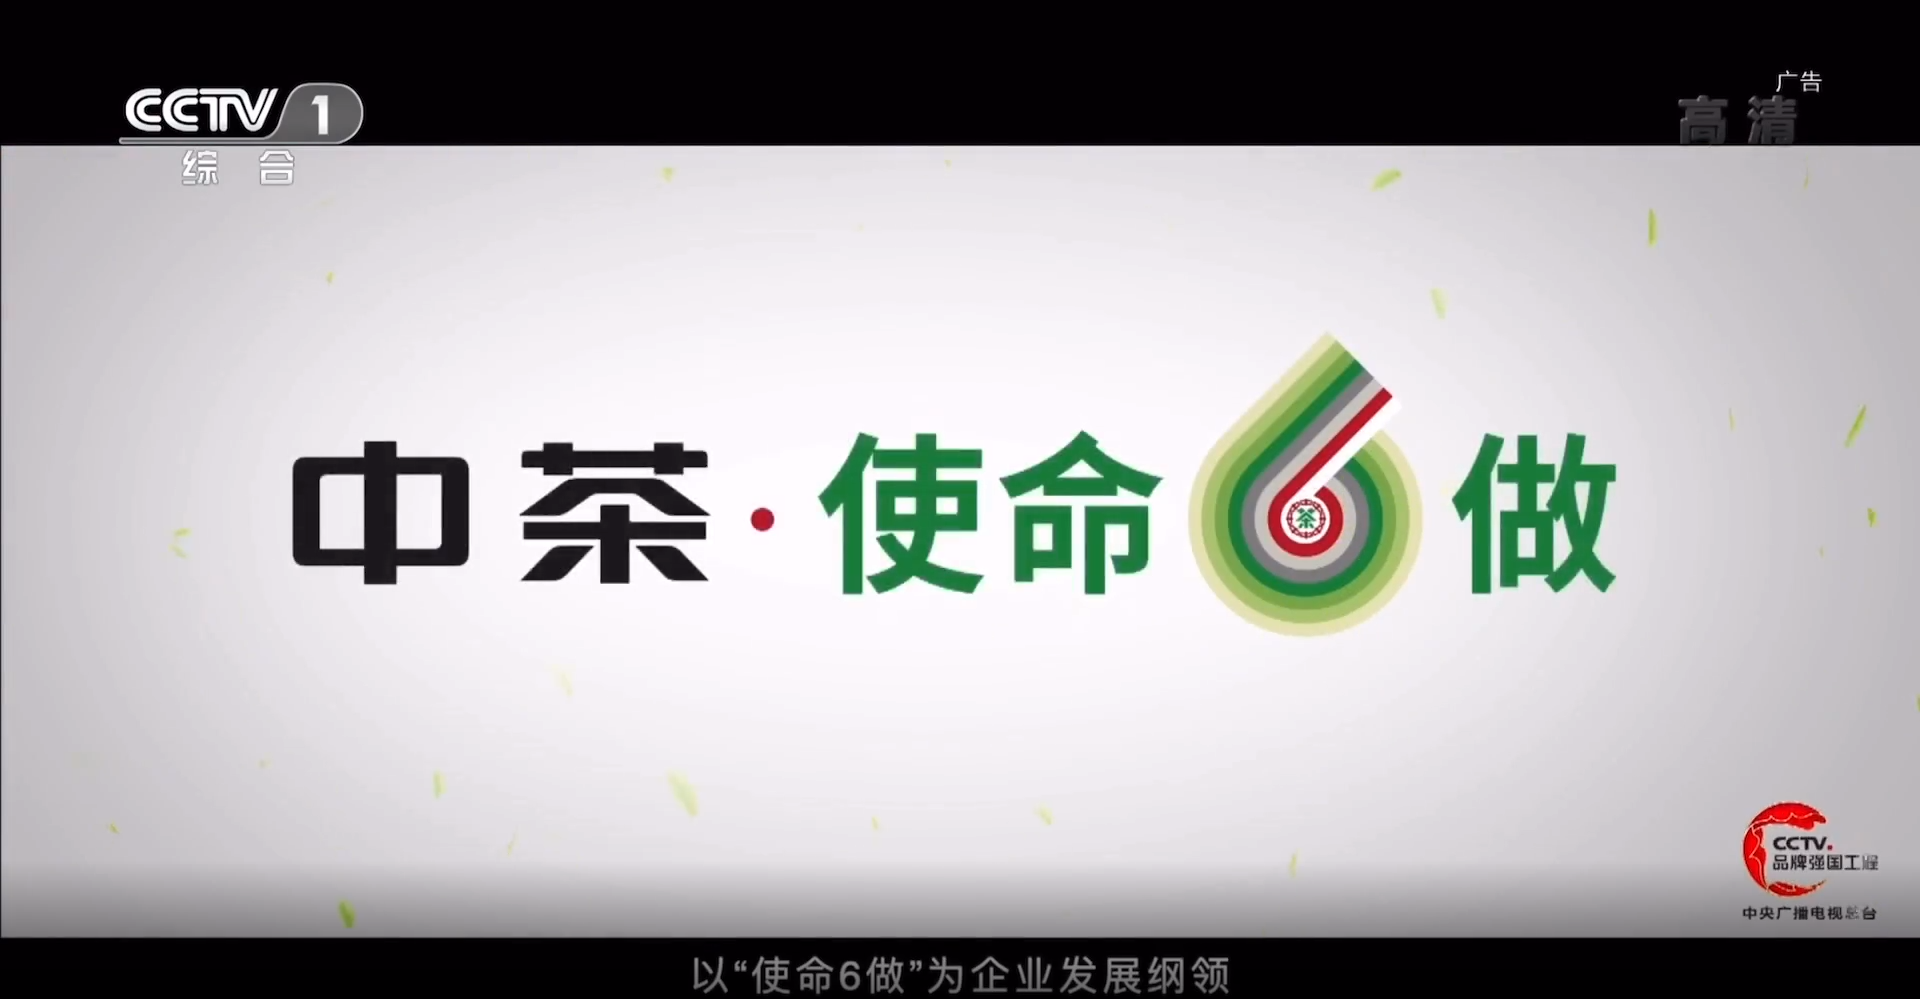 中茶“使命六做”品牌宣传片在新闻联播后播出